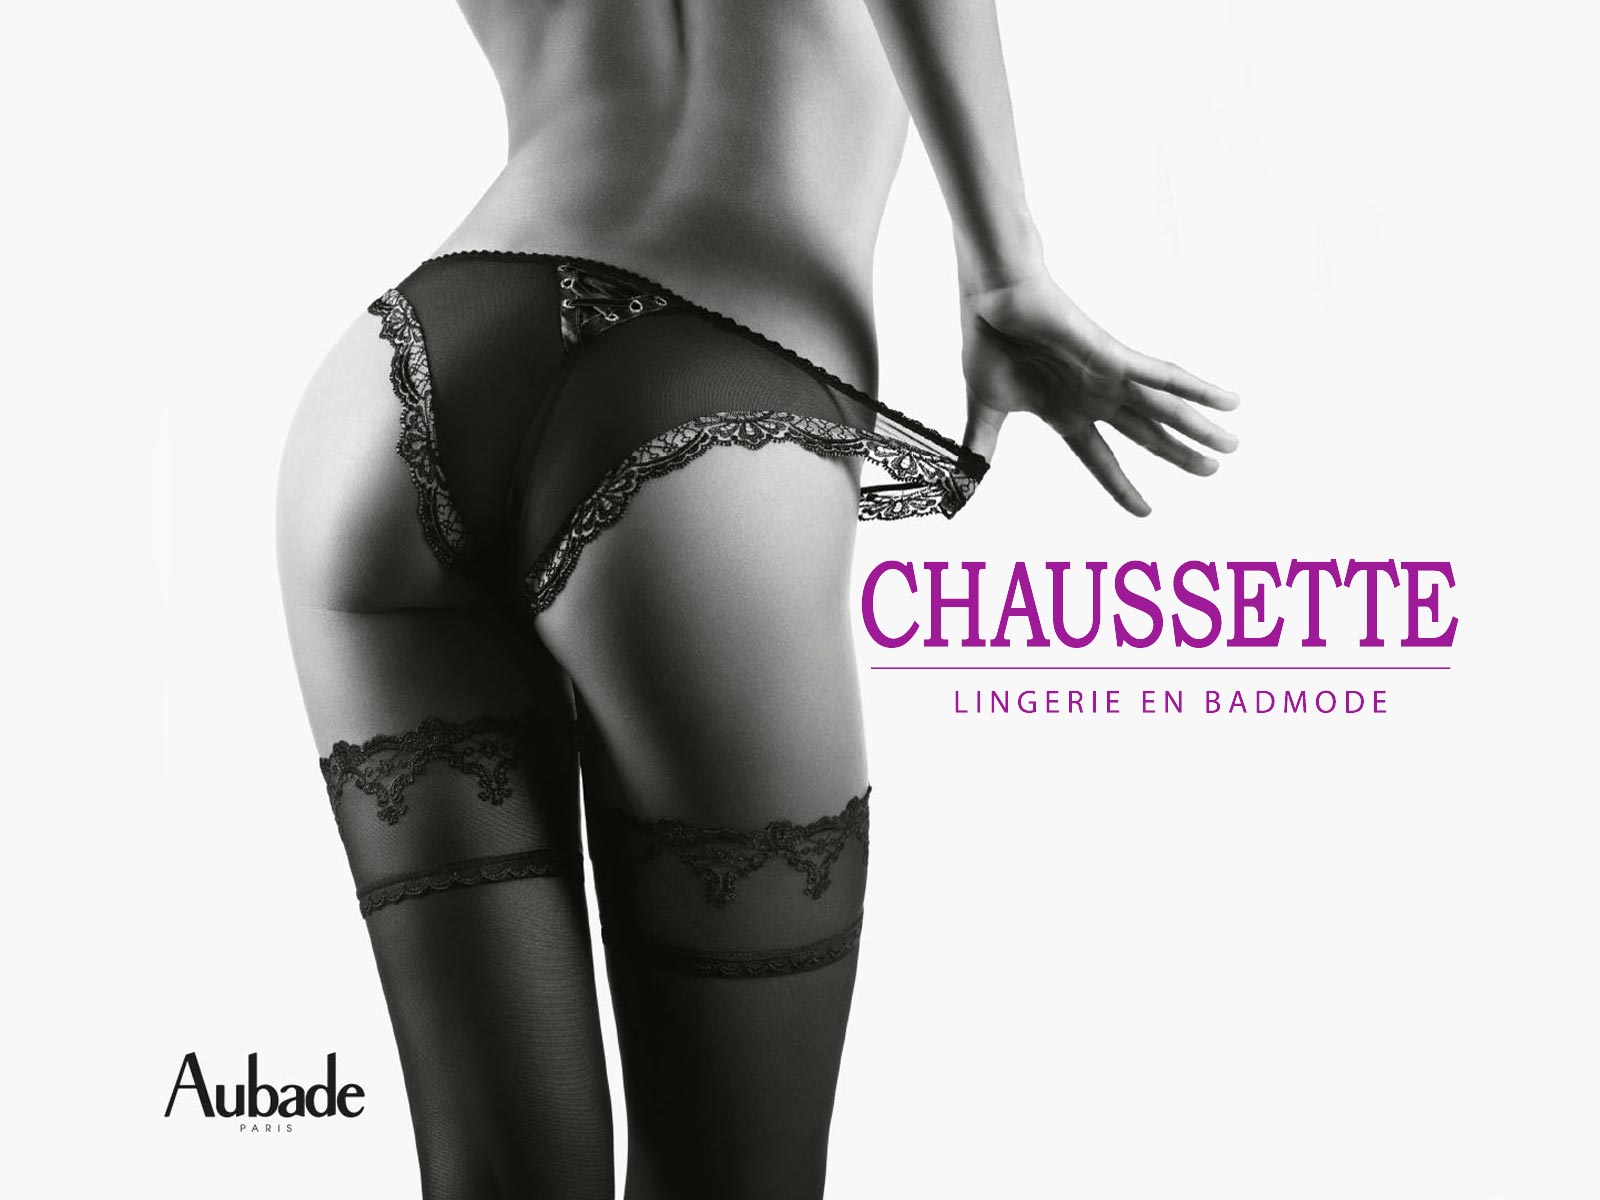 (c) Chaussette.nl